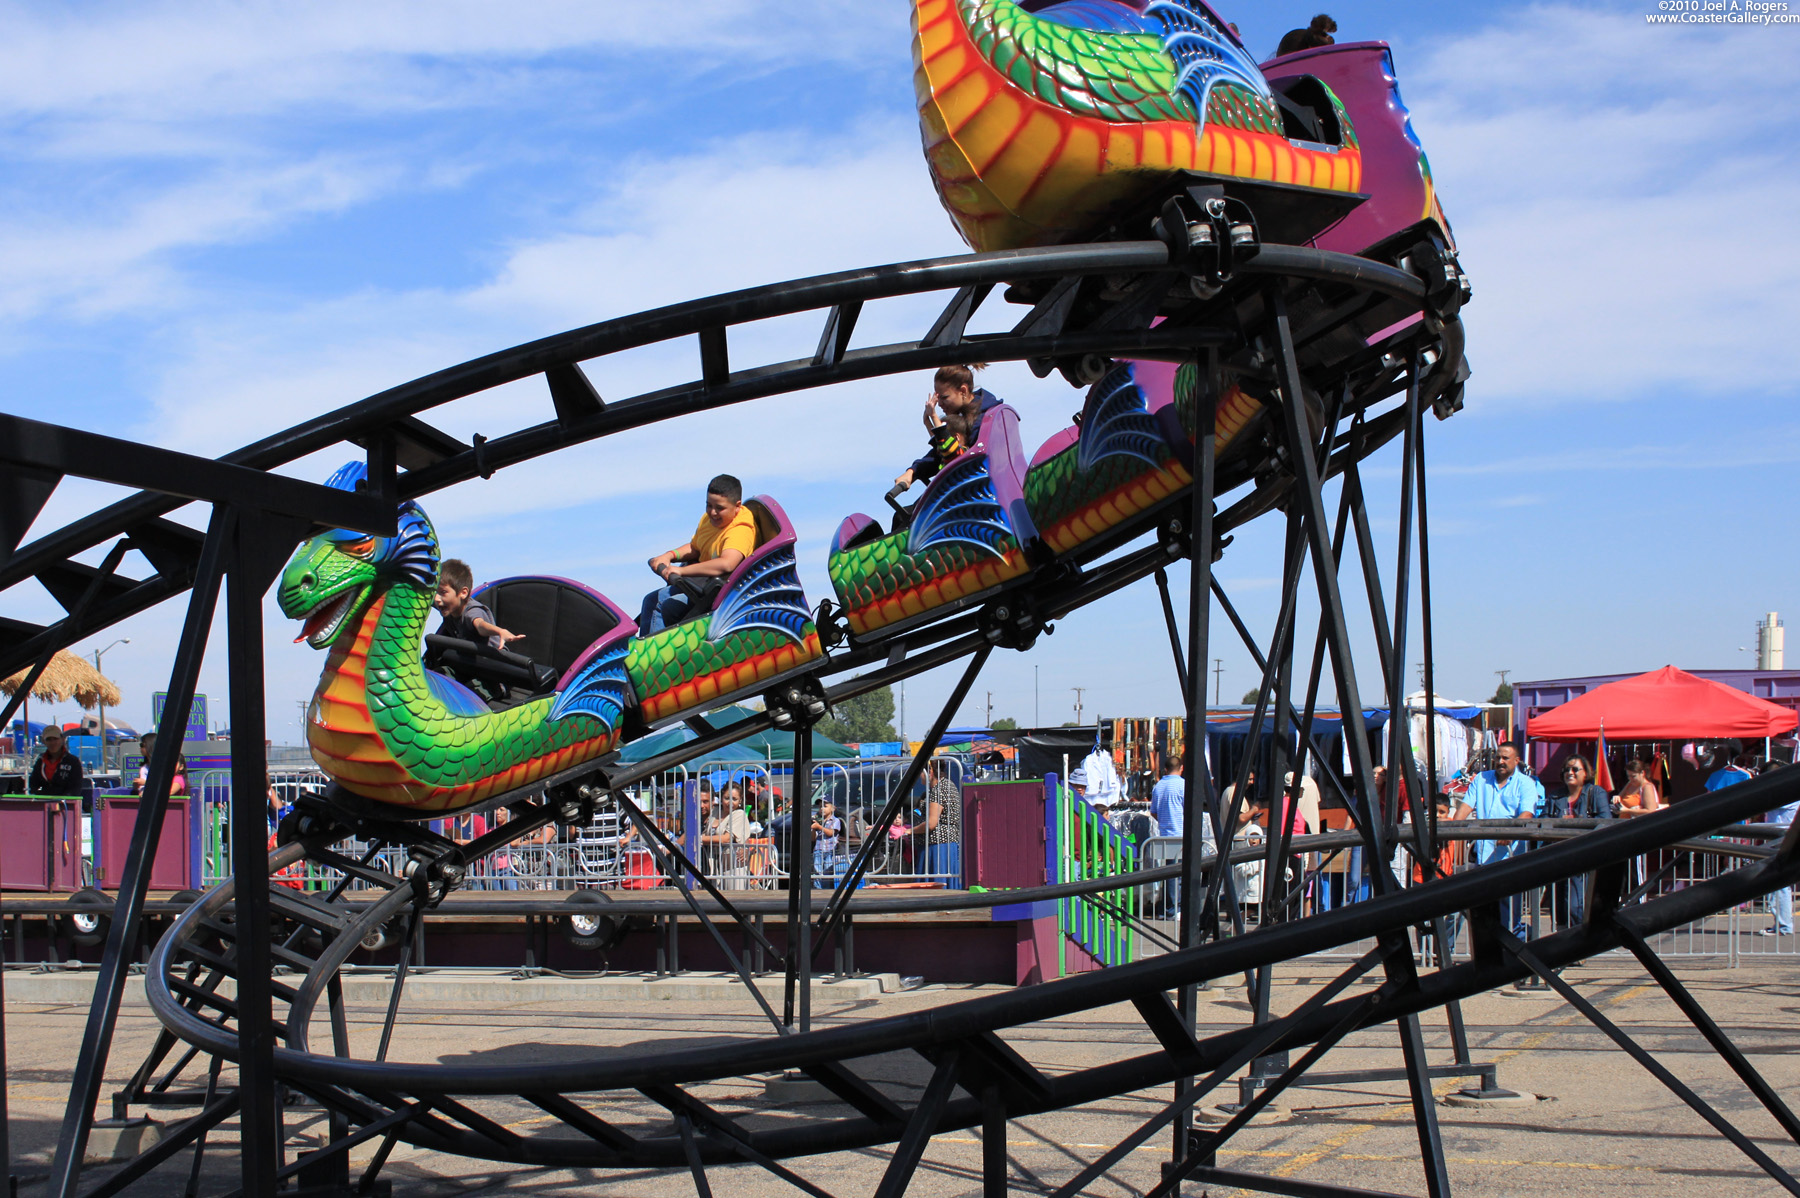 Dragon Wagon coaster in Colorado